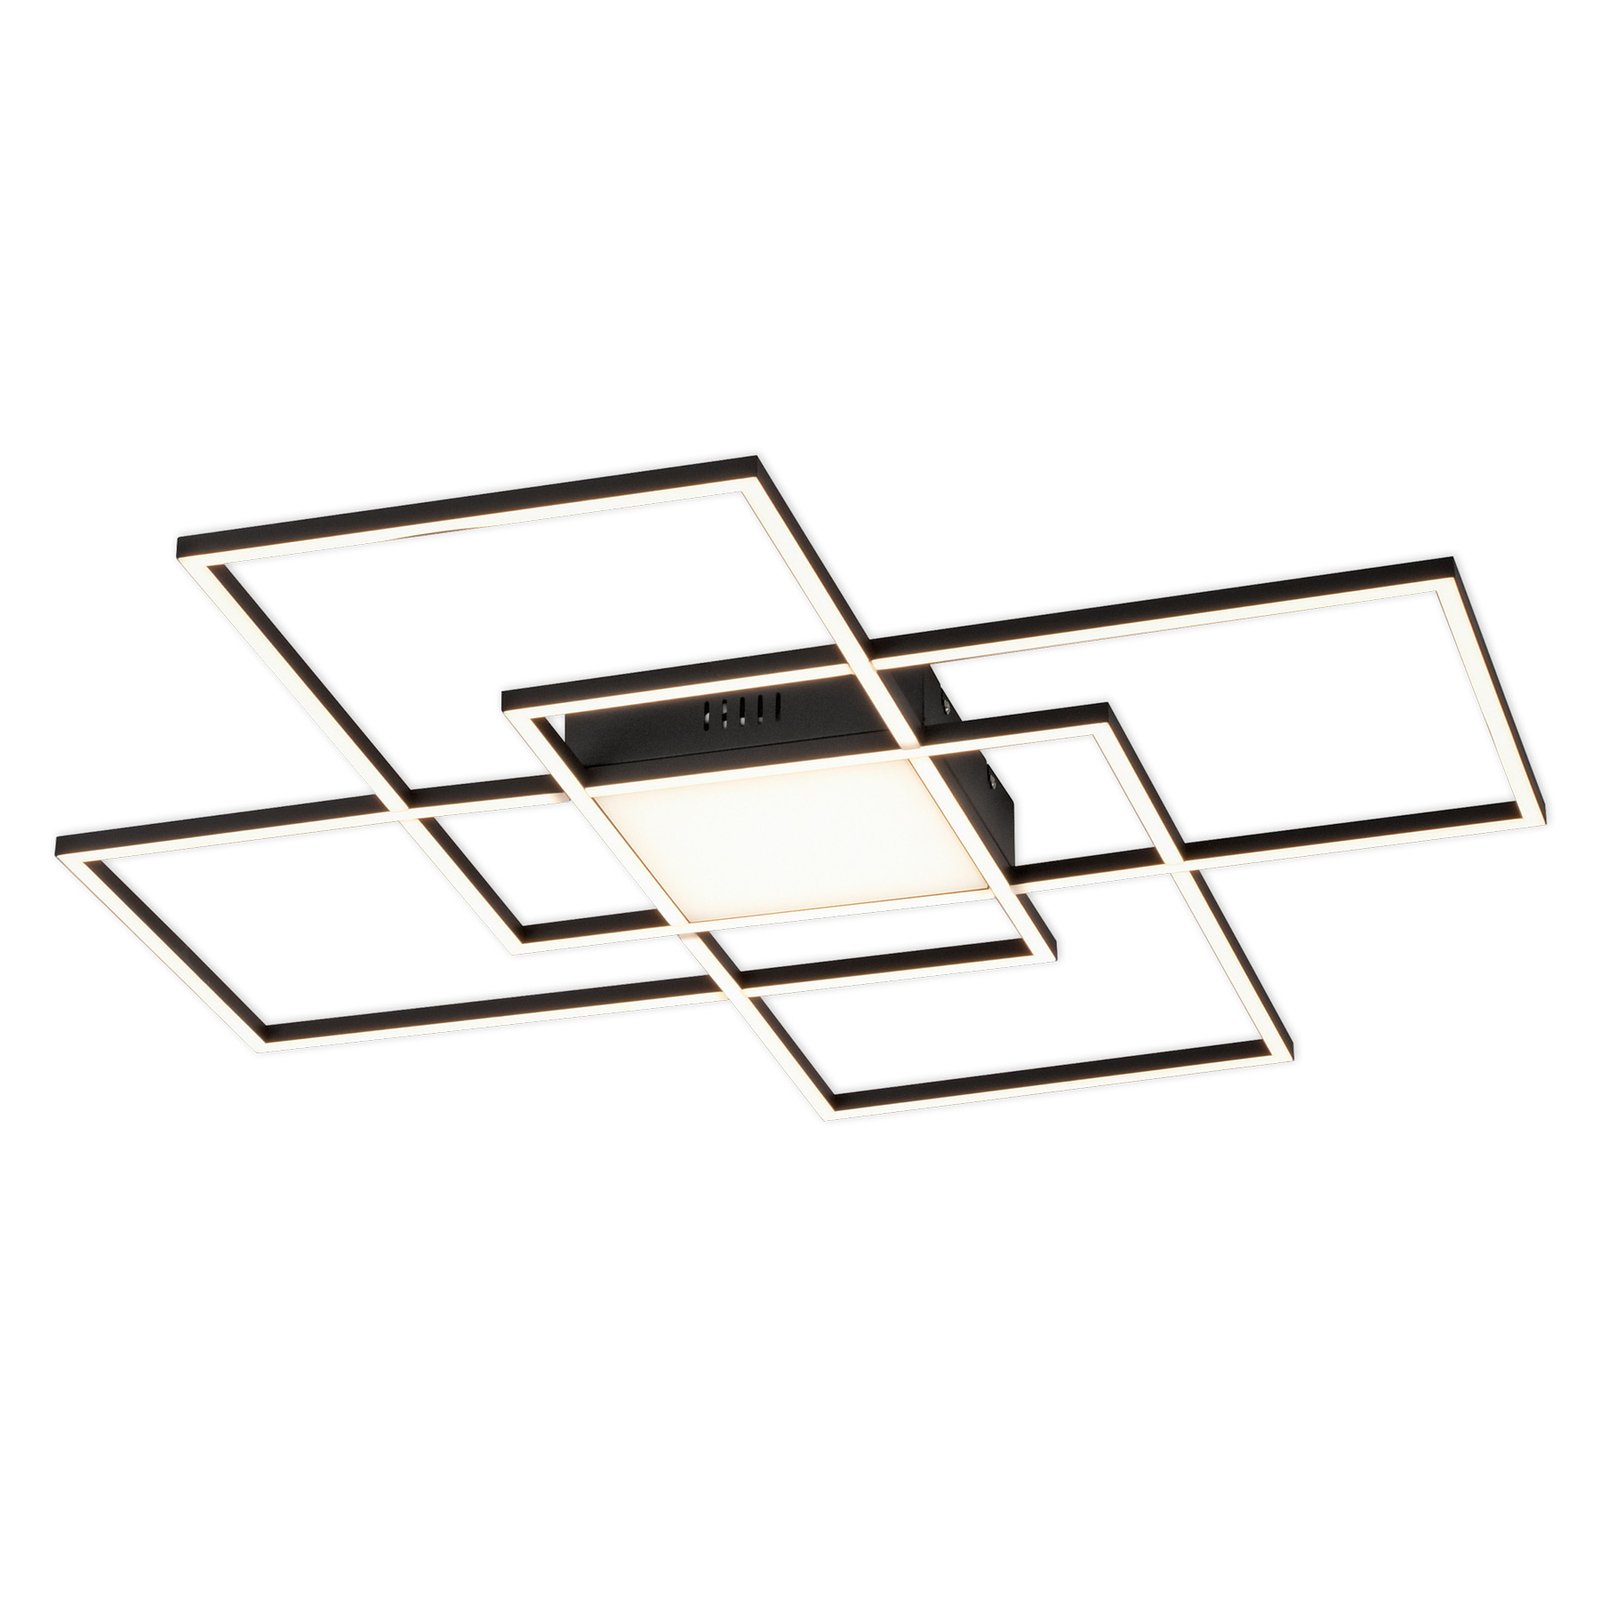 Paul Neuhaus Q-ASMIN LED-taklampa, 80 x 80 cm